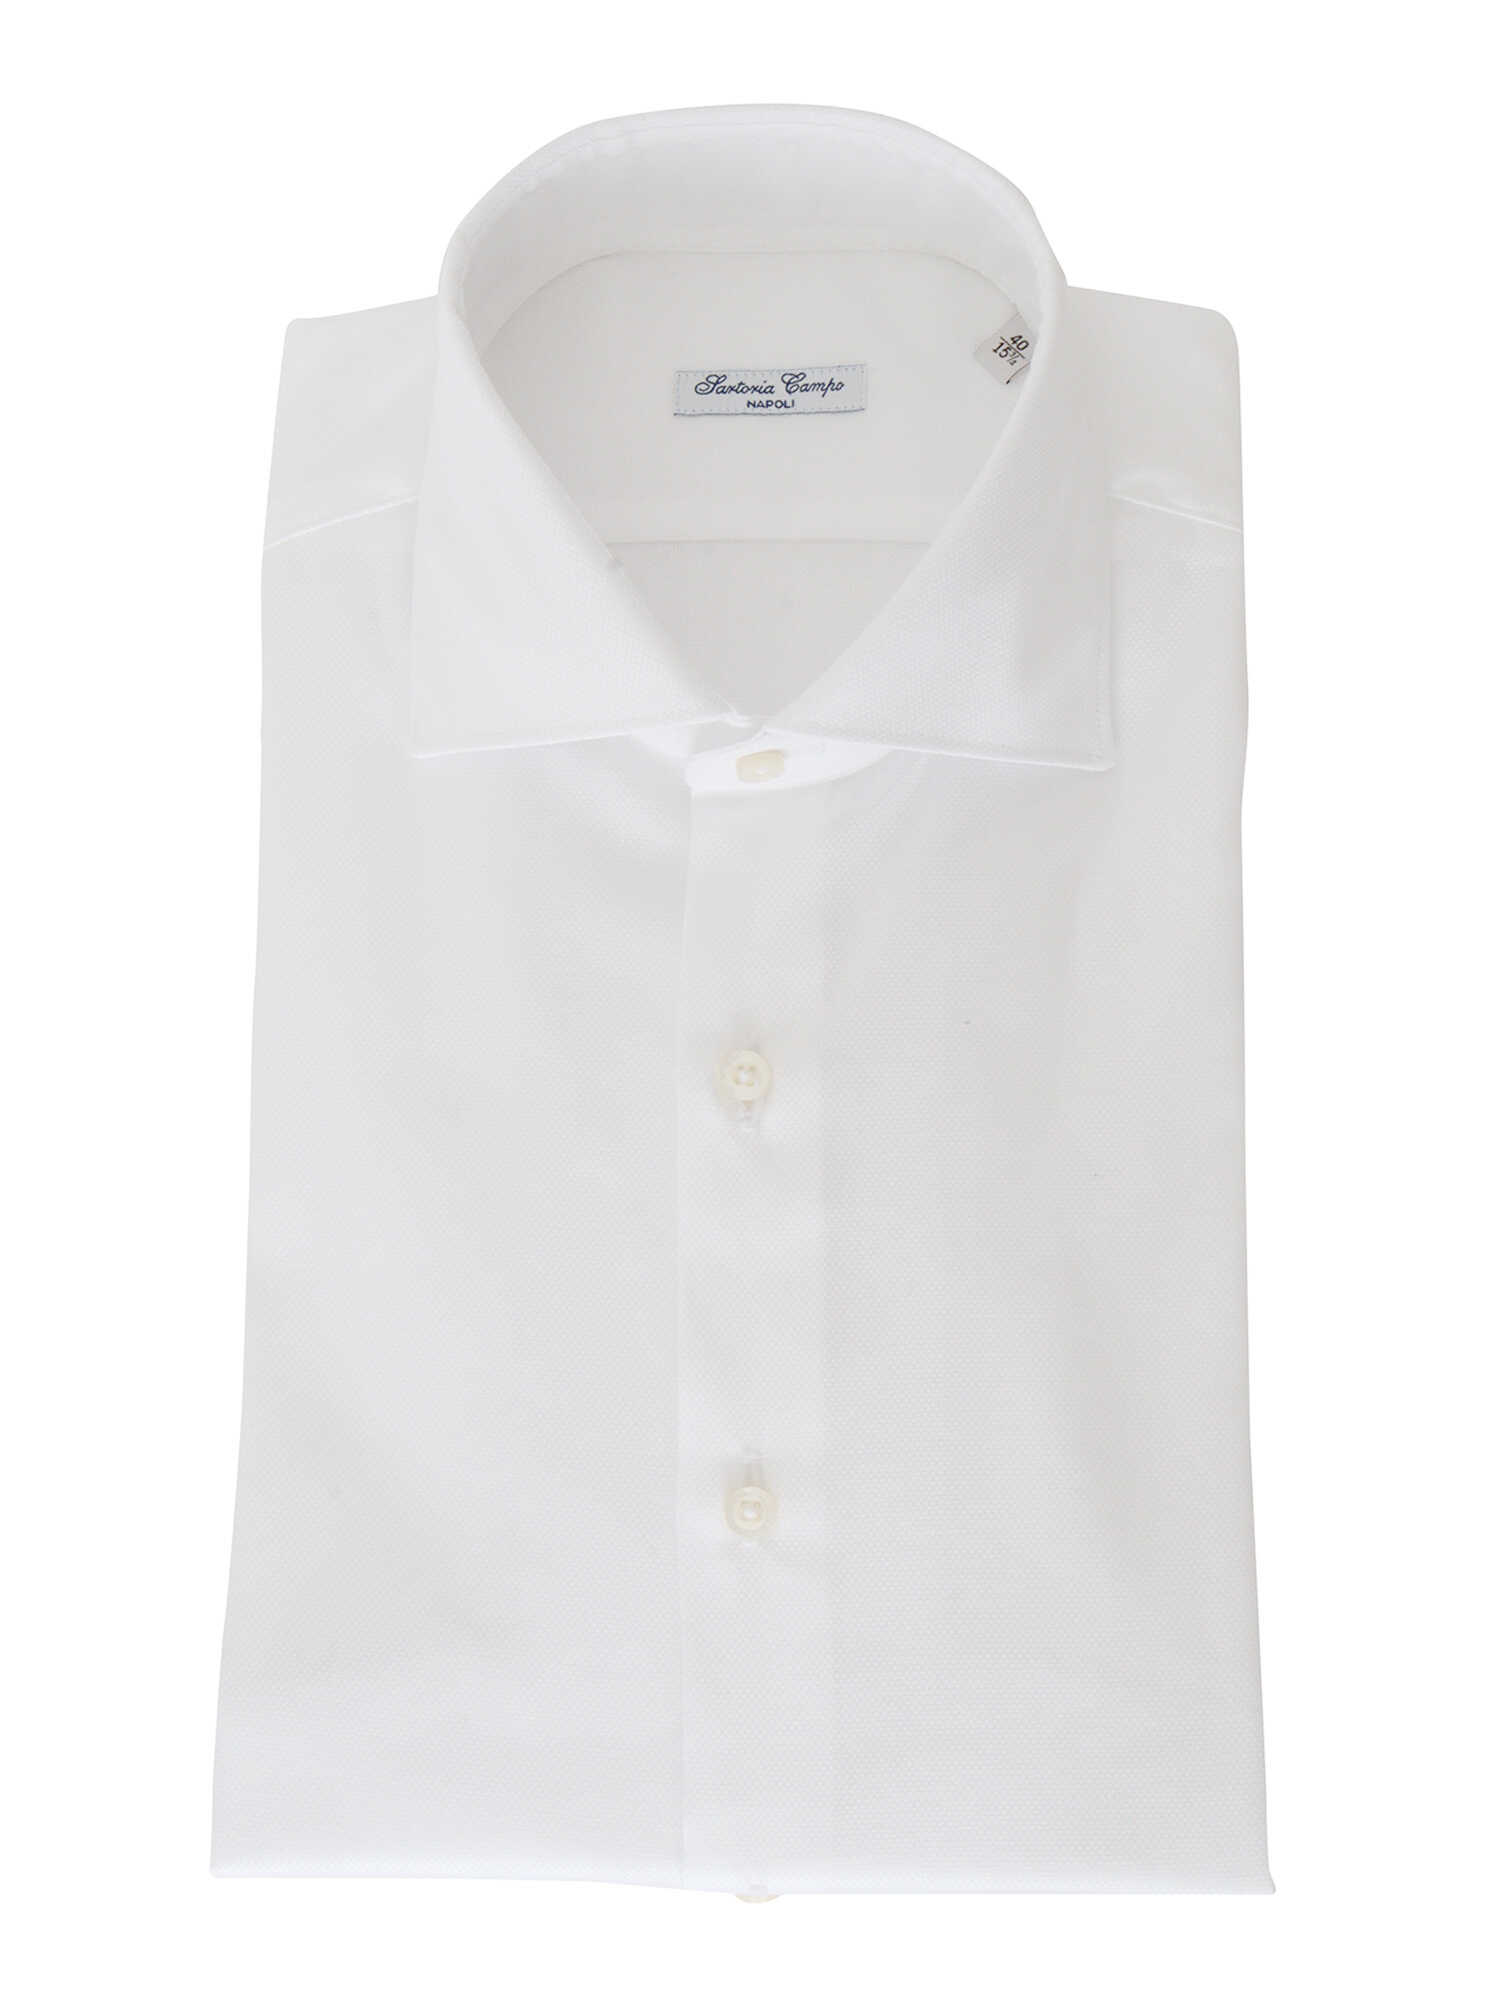 Sartoria Del Campo-Sonrisa Classic shirt White